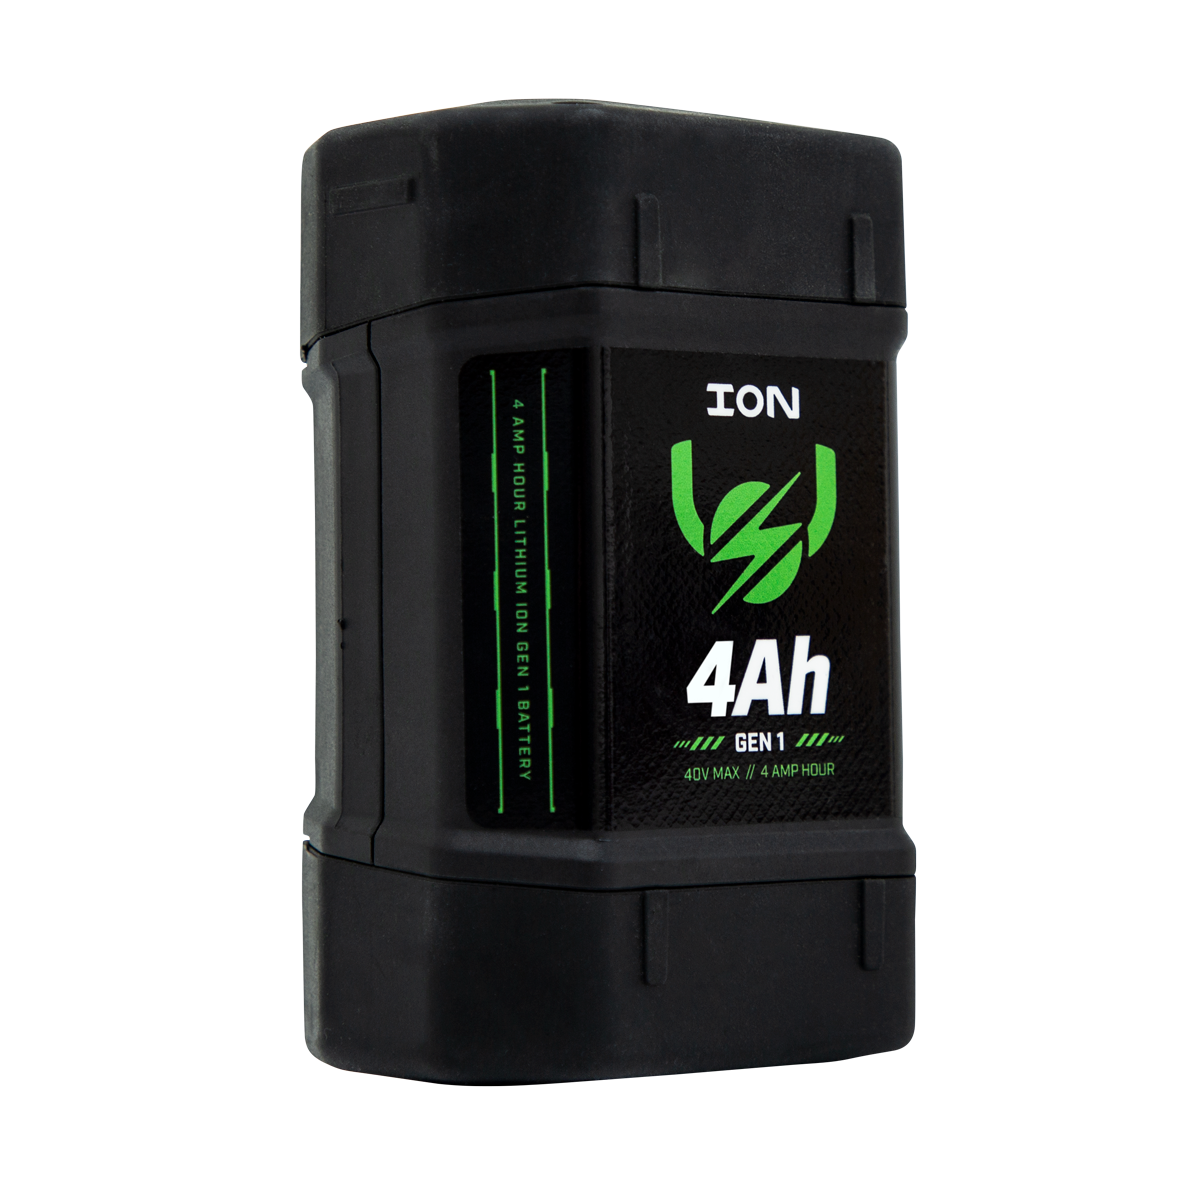 ION® 4Ah Battery (Gen 1)